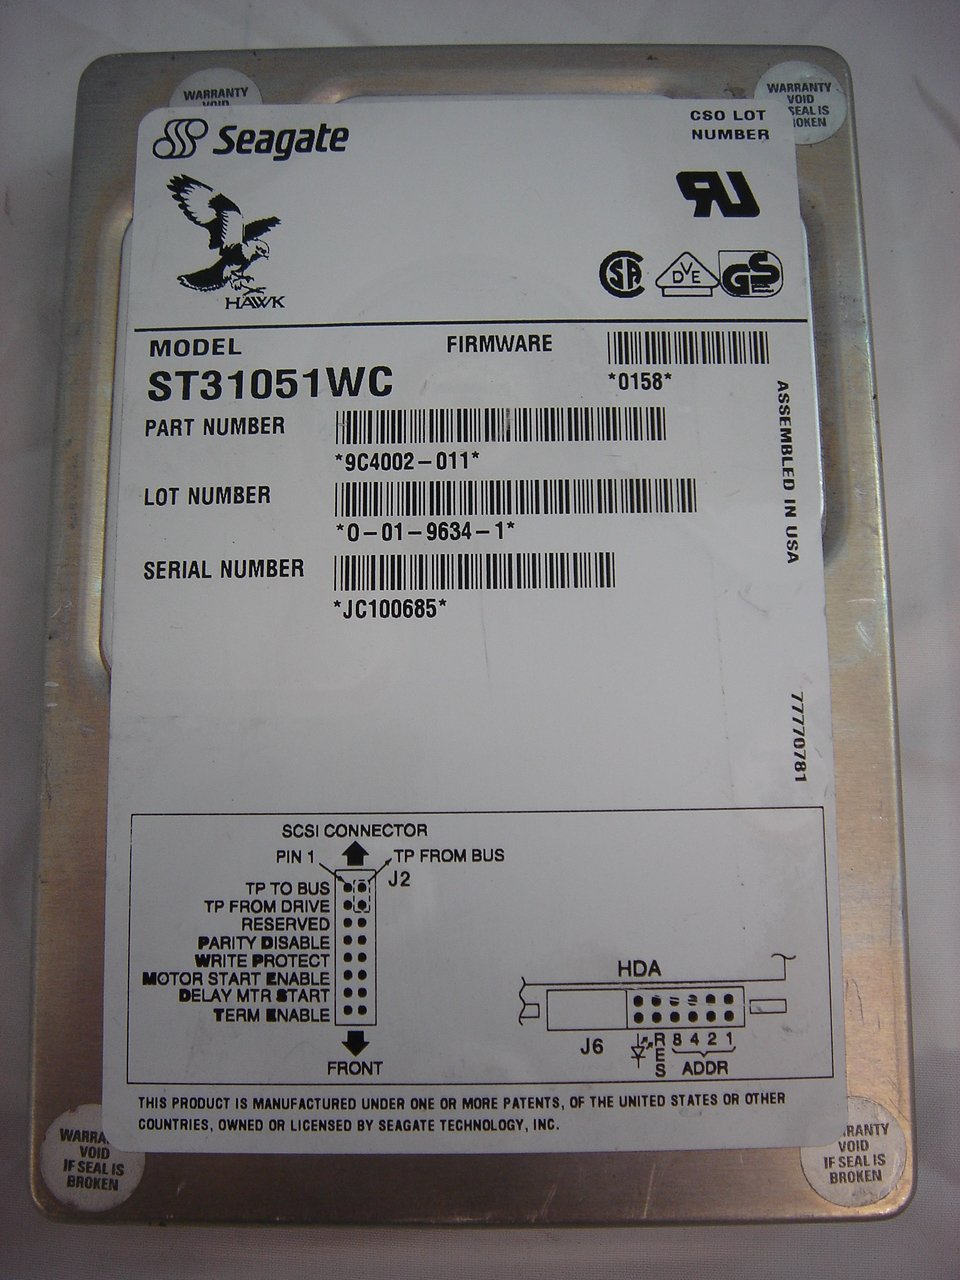 MC5434_9C4002-011_Seagate 1GB SCSI SCA 80 HDD - Image2